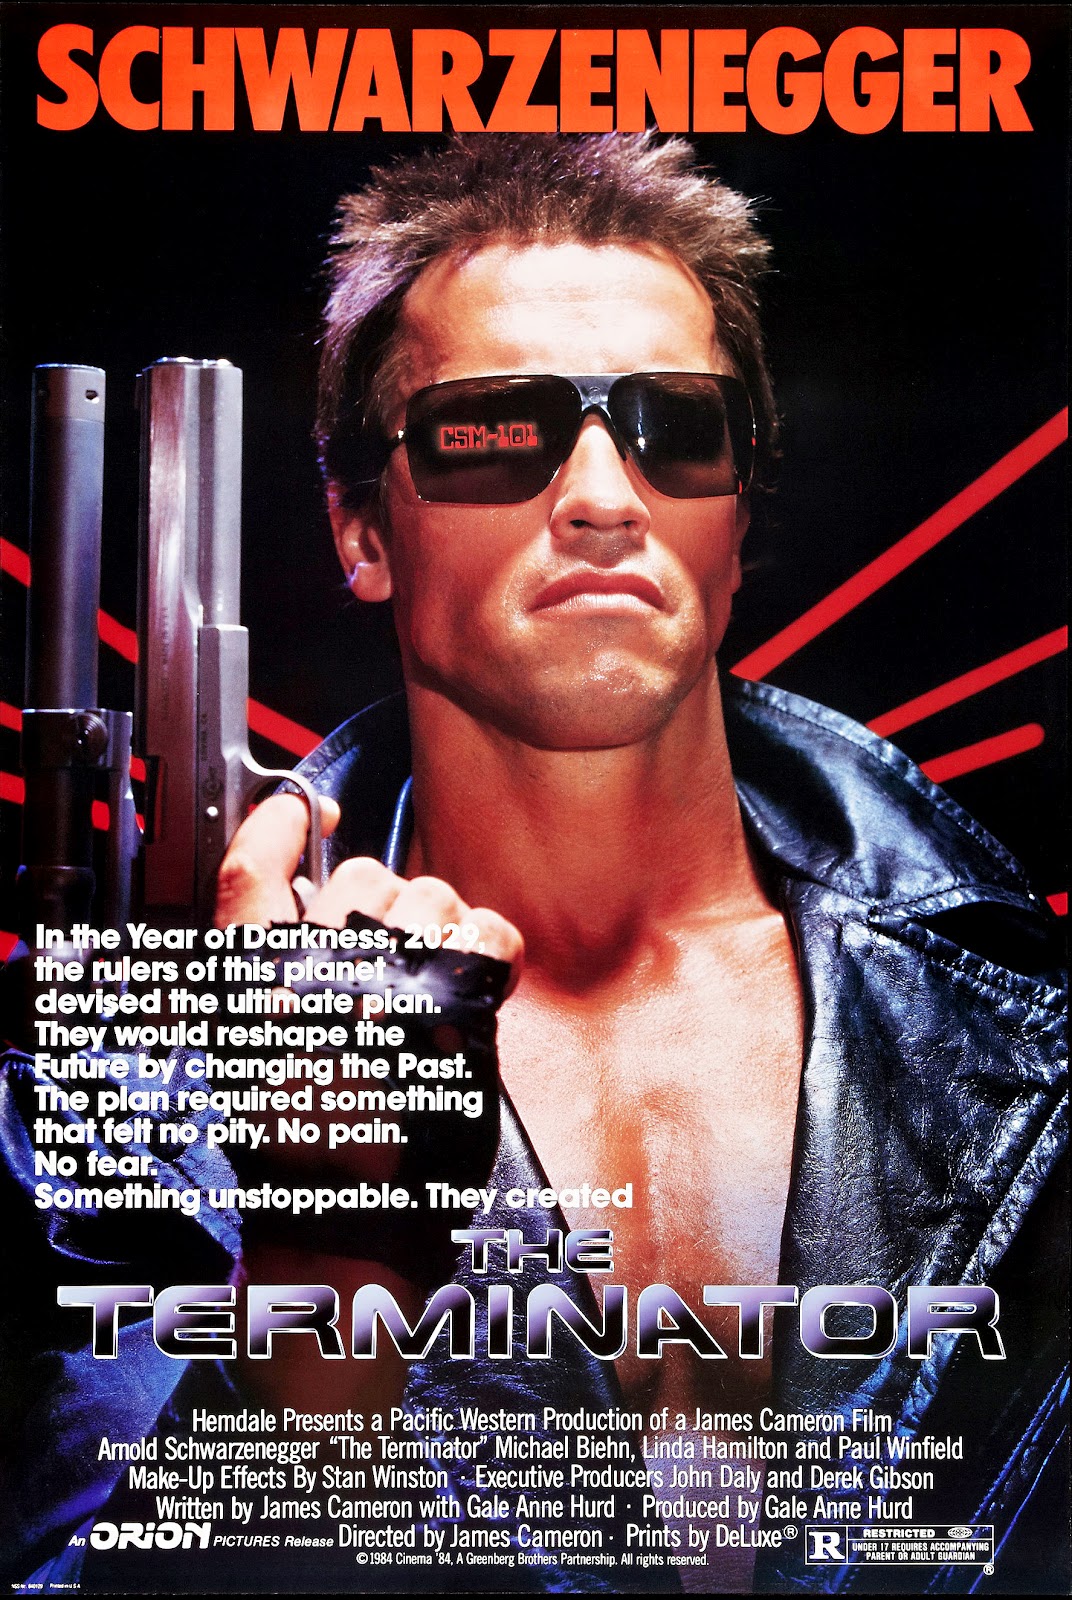 Aero Theatre Presents: The Terminator